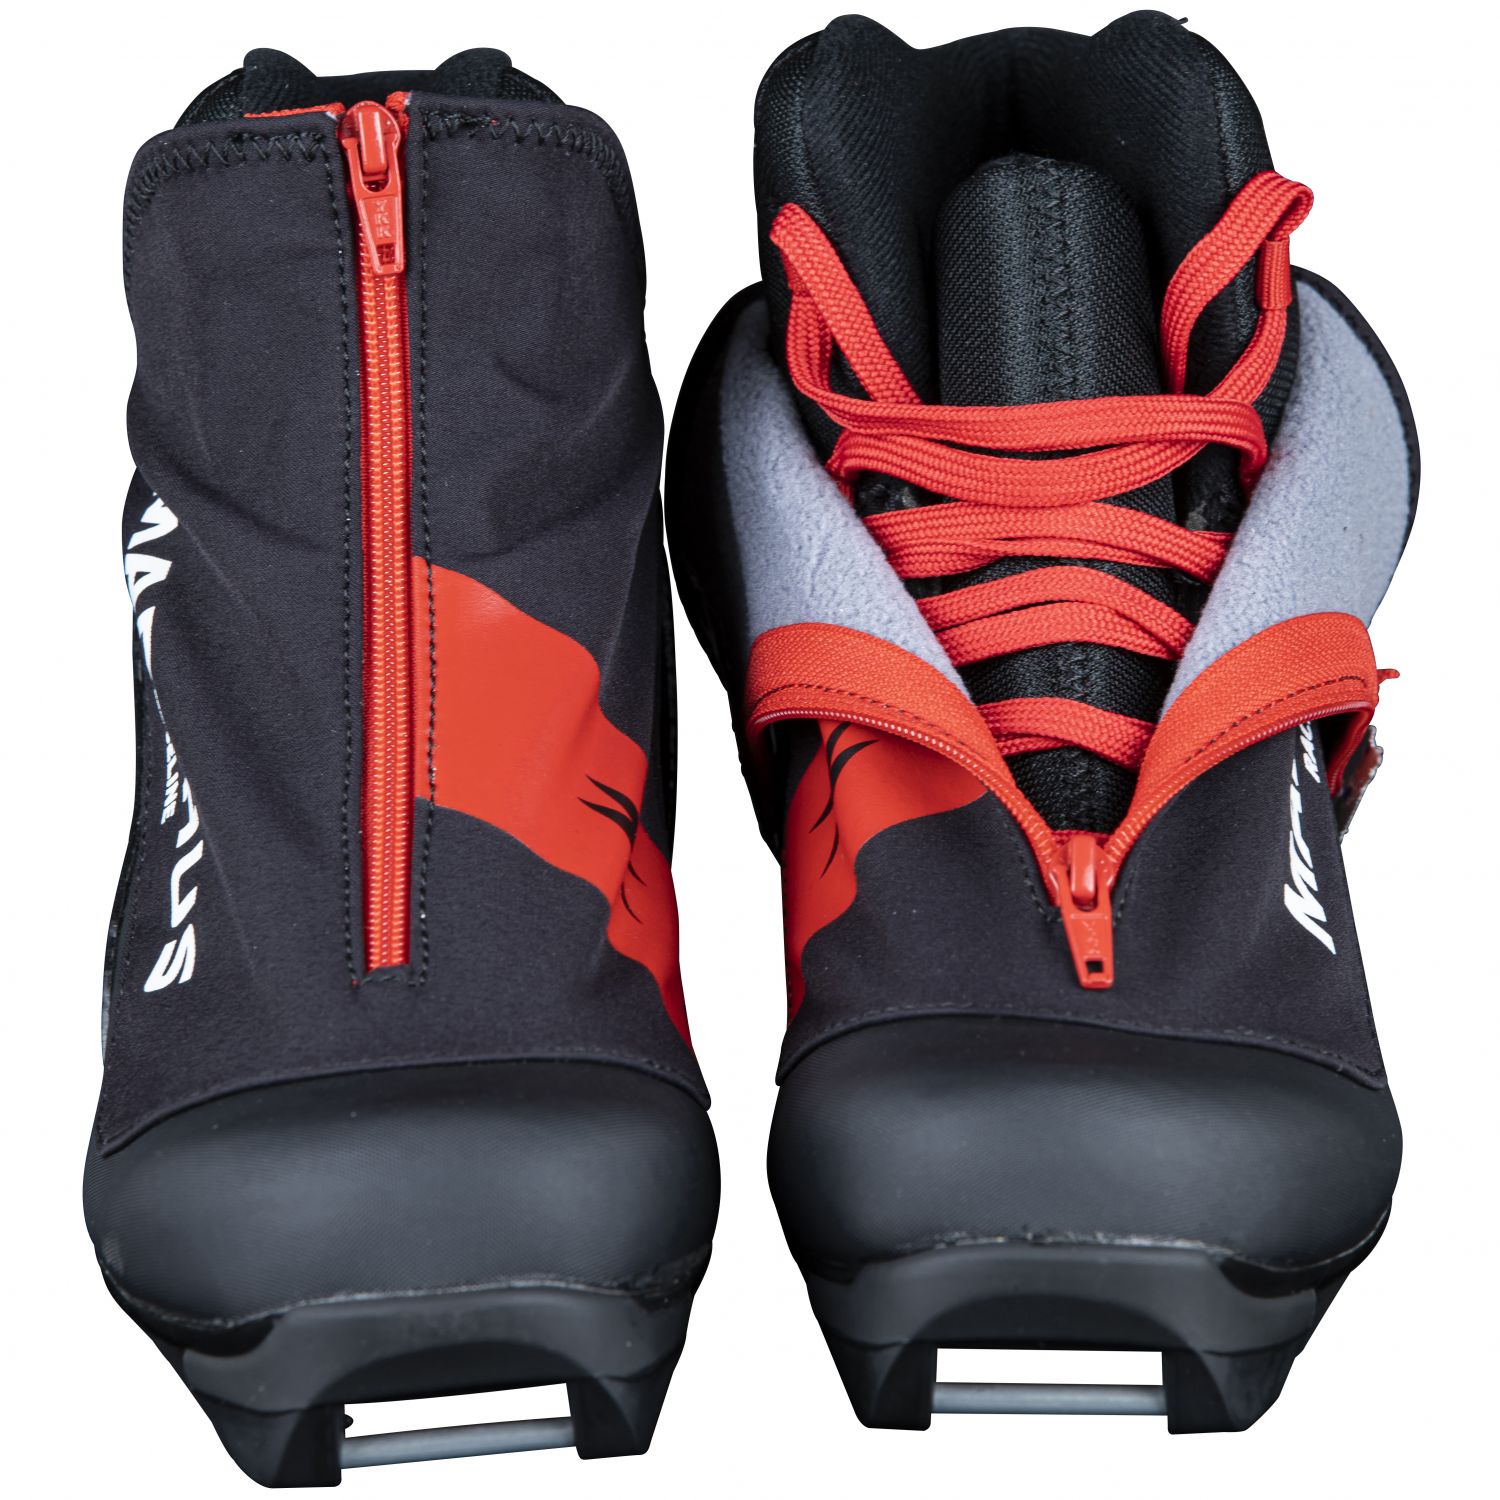 Madhus Raceline, Chaussures de ski de fond, Junior, Noir